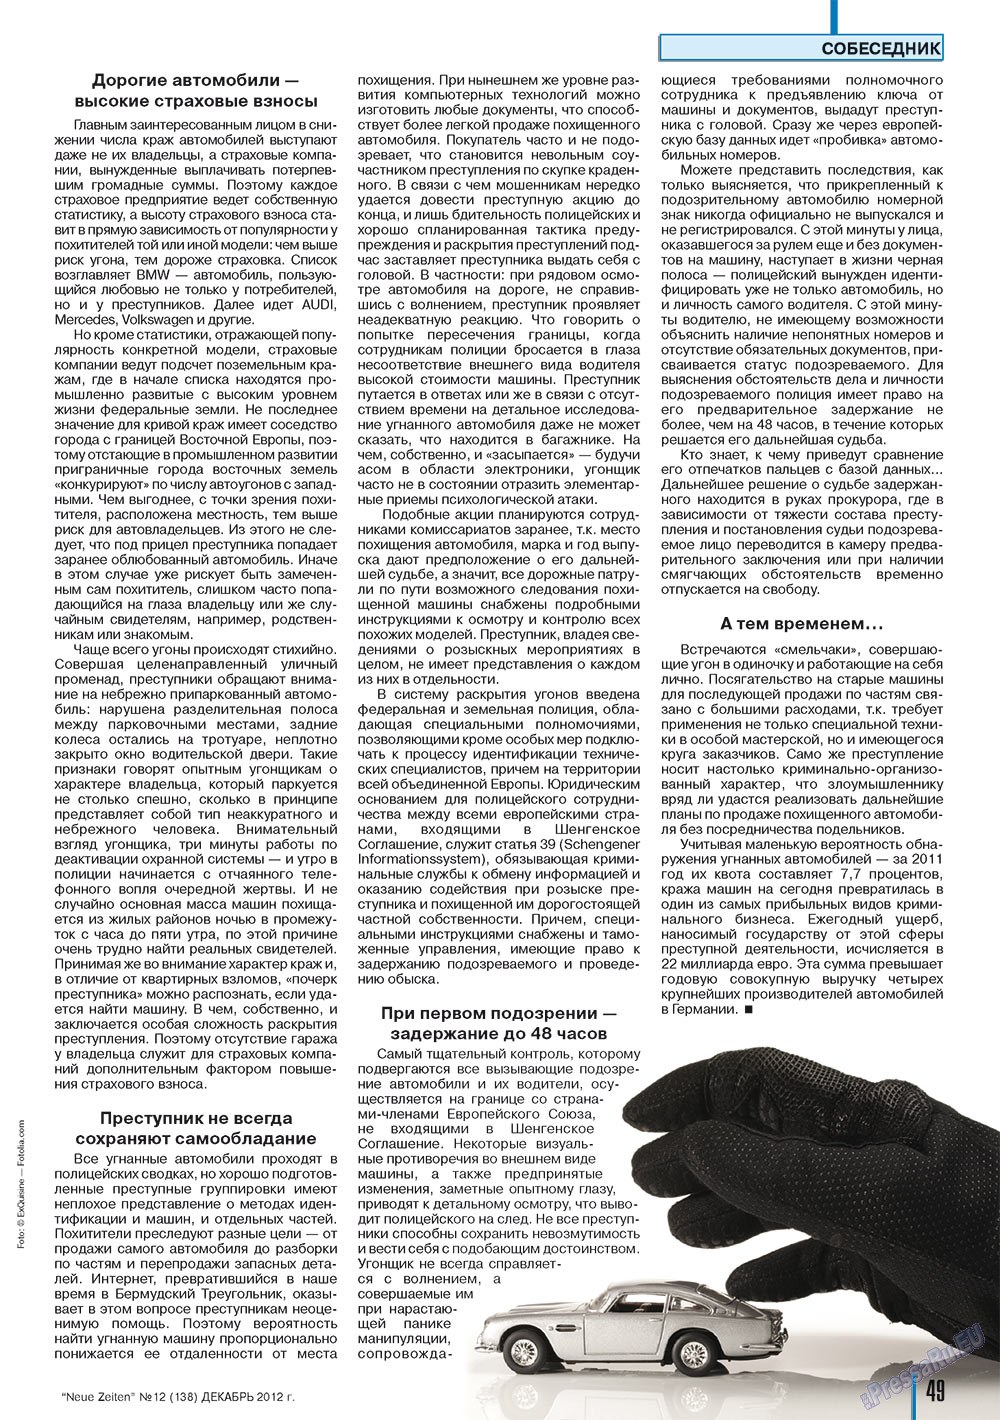 Neue Zeiten, журнал. 2012 №12 стр.49